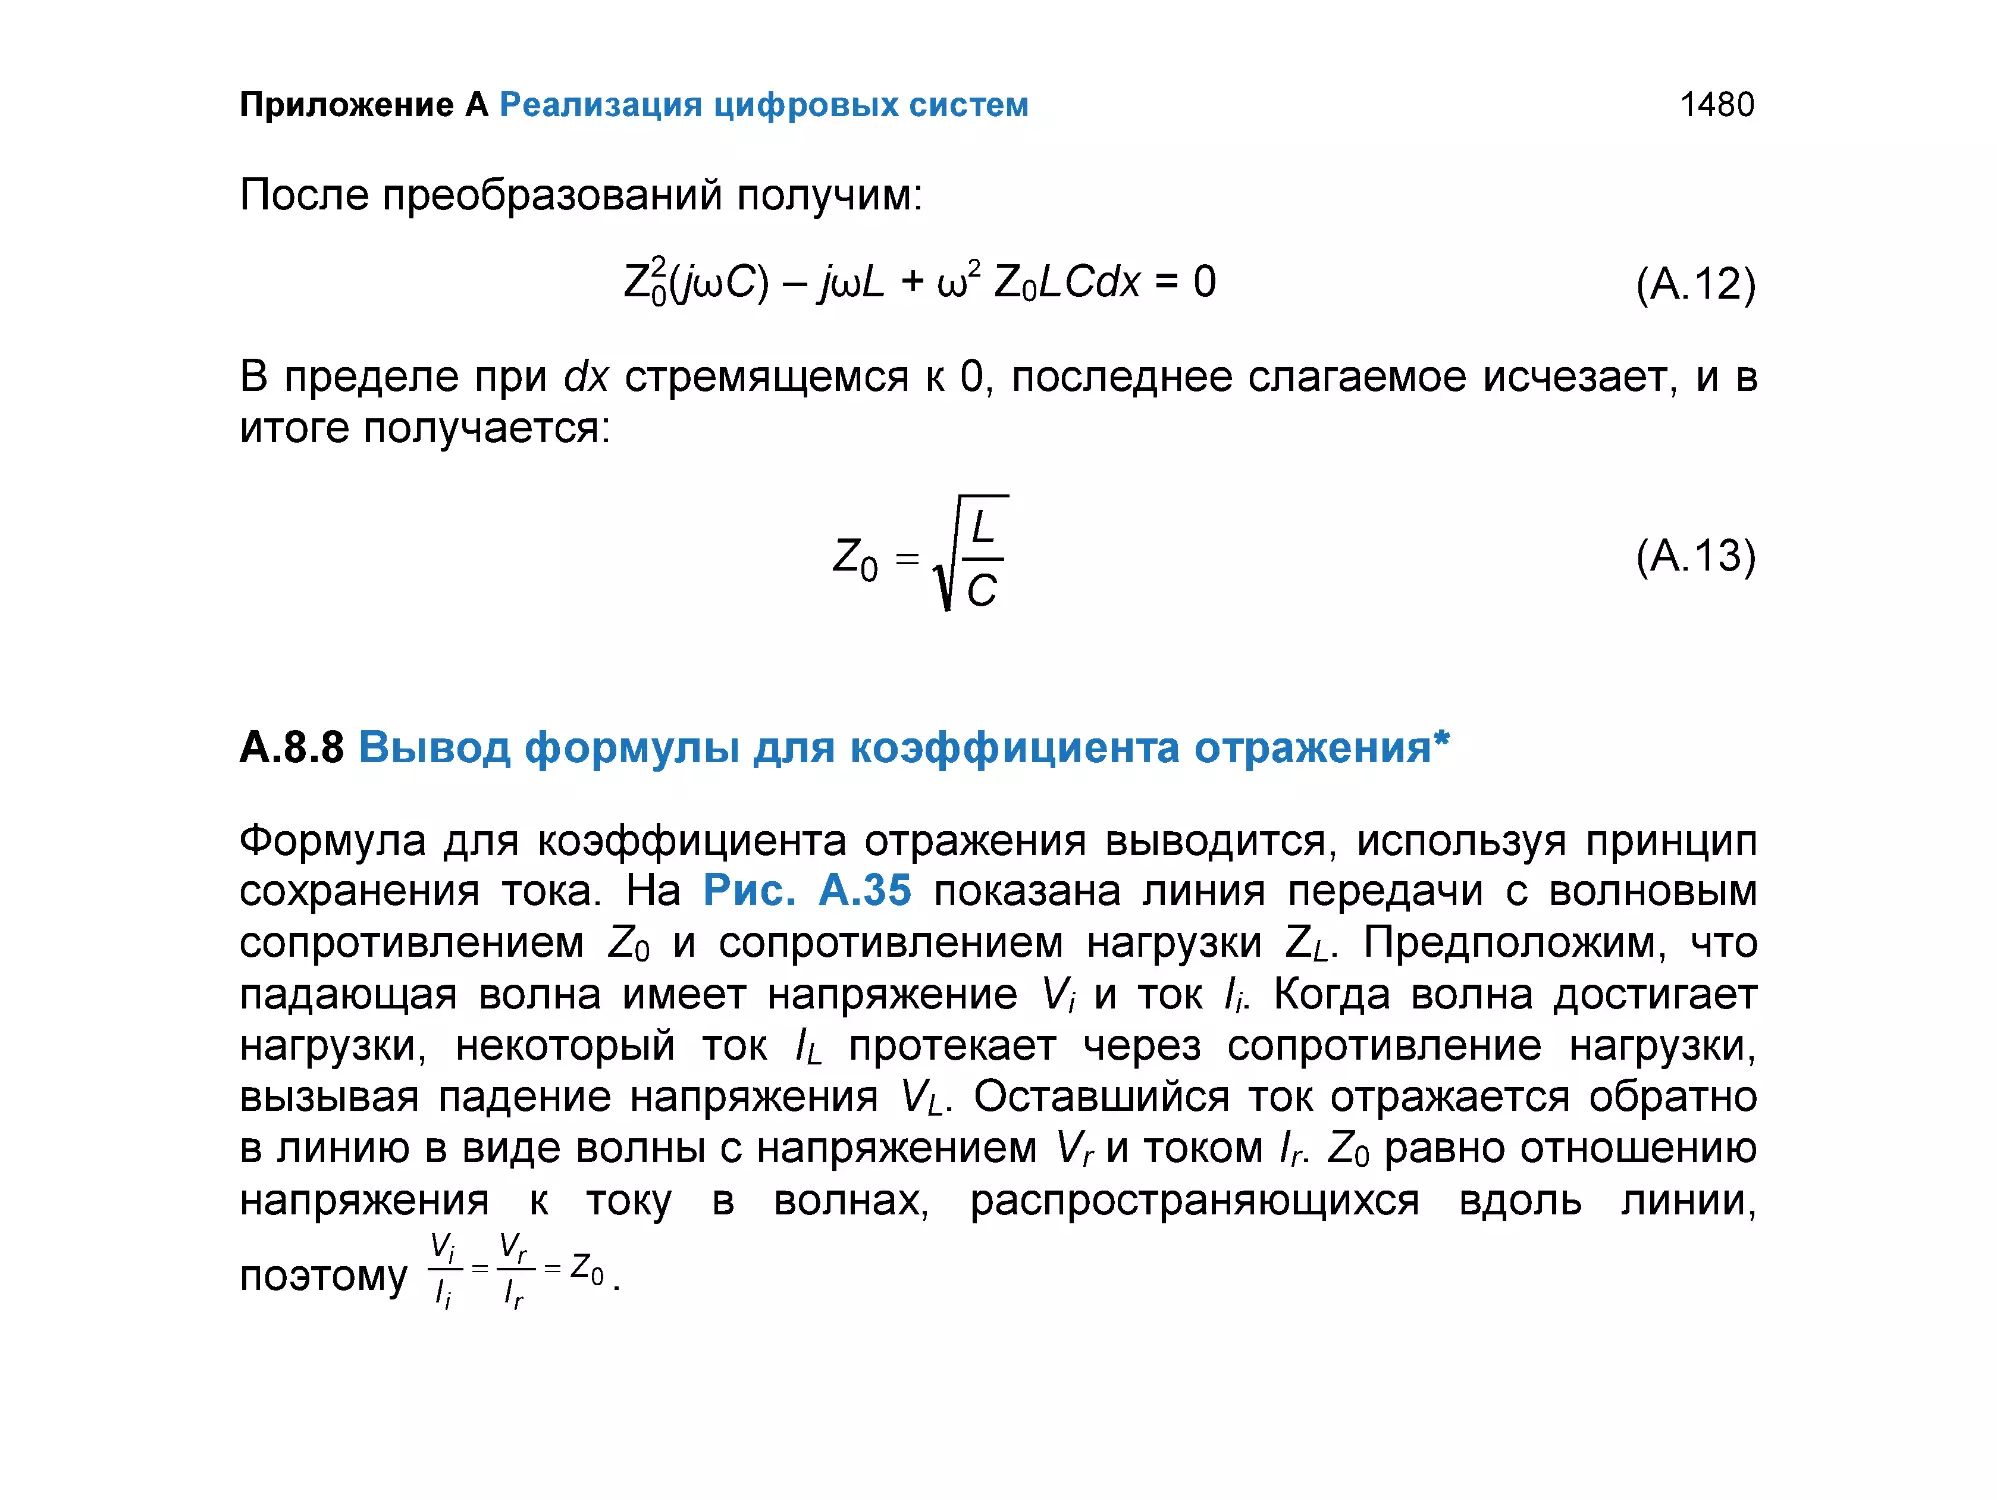 A.8.8 Вывод формулы для коэффициента отражения(